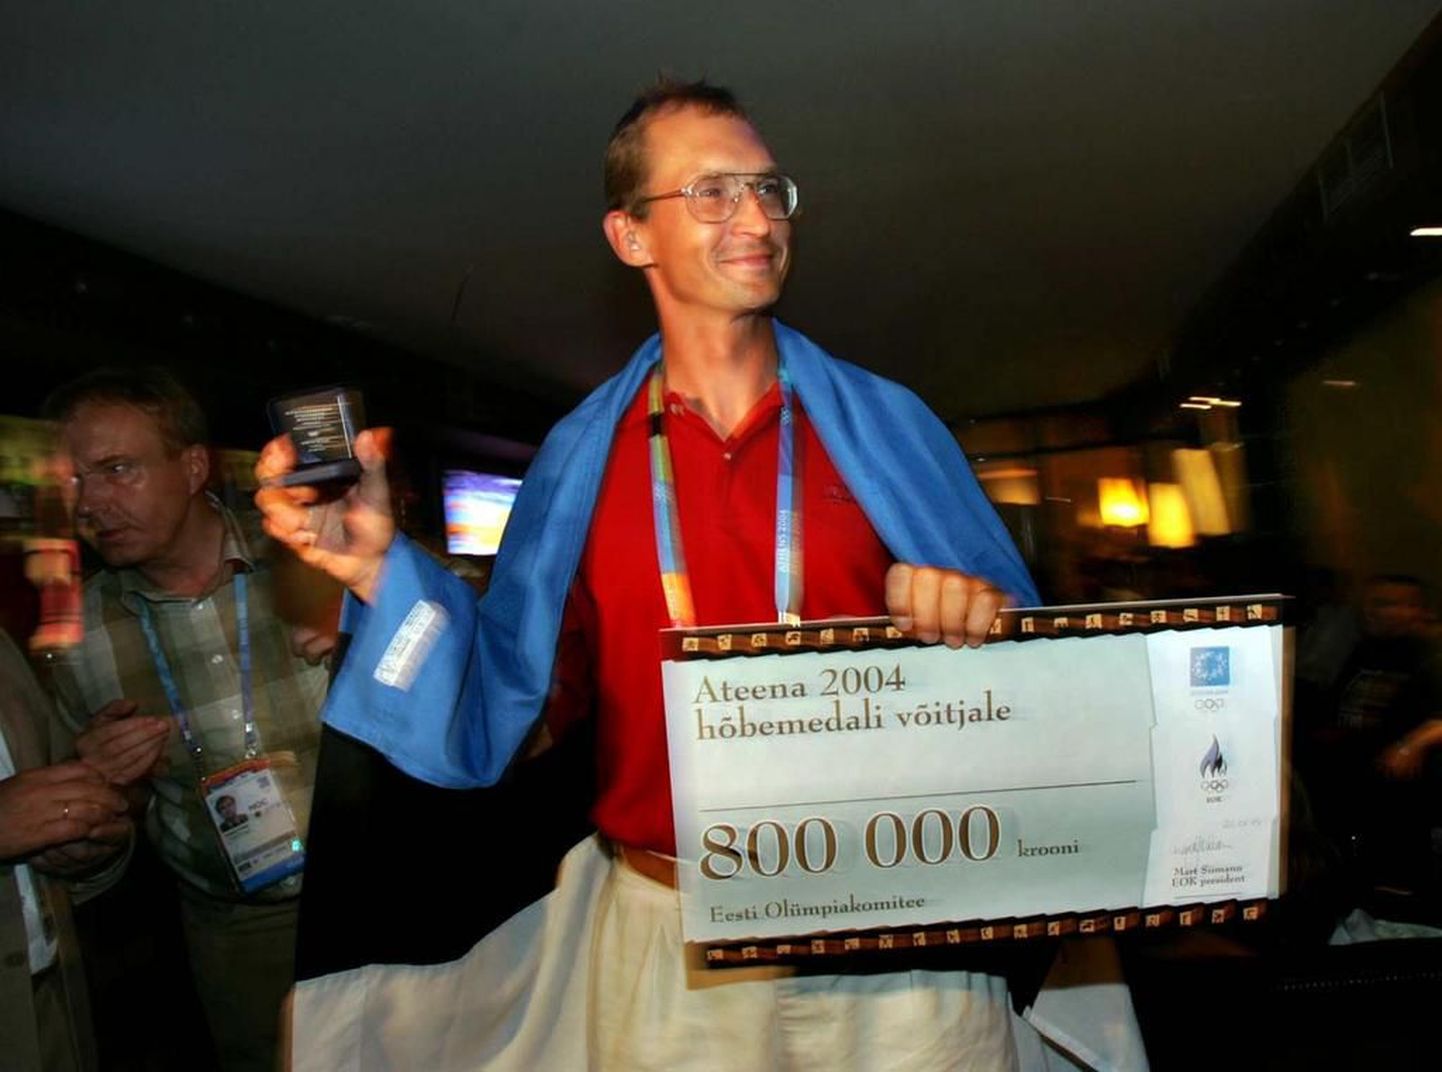 Olümpiakomitee president Mart Siimann ulatas Jüri Jaansonile 800 000-kroonise preemiateki.